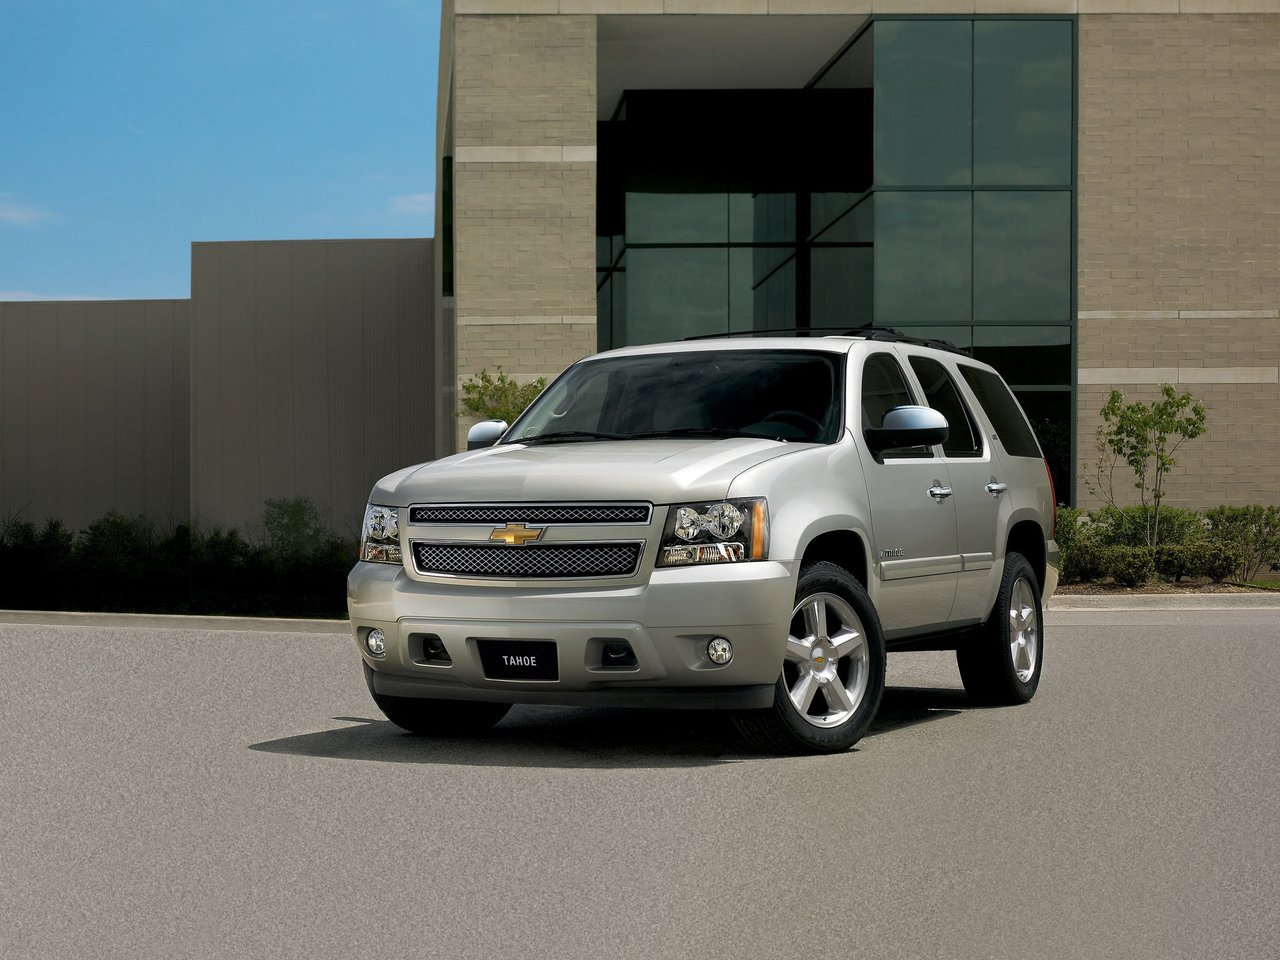 Расход газа одной комплектации внедорожника пять дверей Chevrolet Tahoe. Разница стоимости заправки газом и бензином. Автономный пробег до и после установки ГБО.